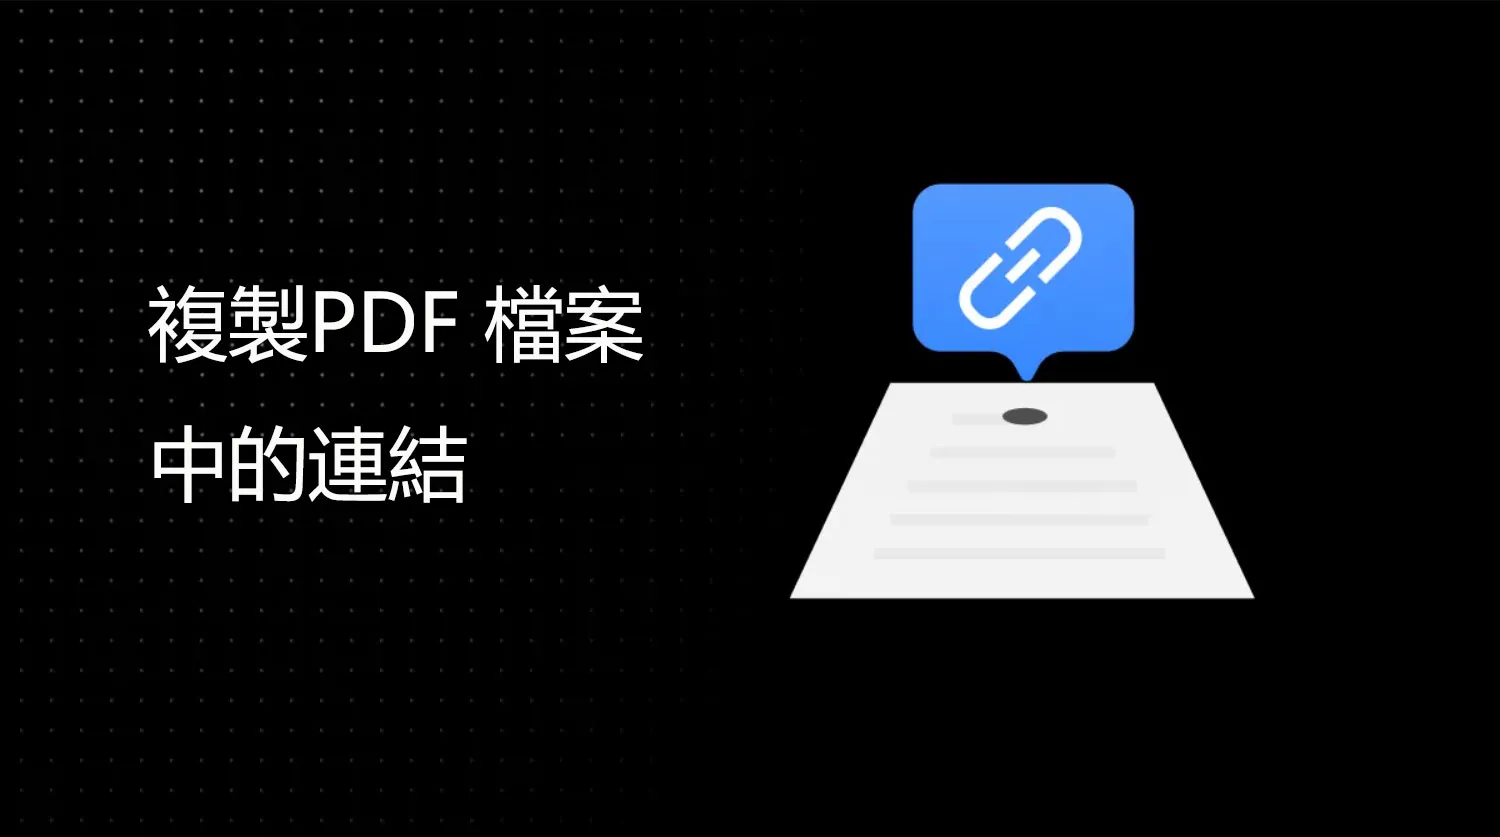 如何複製PDF 檔案中的連結？